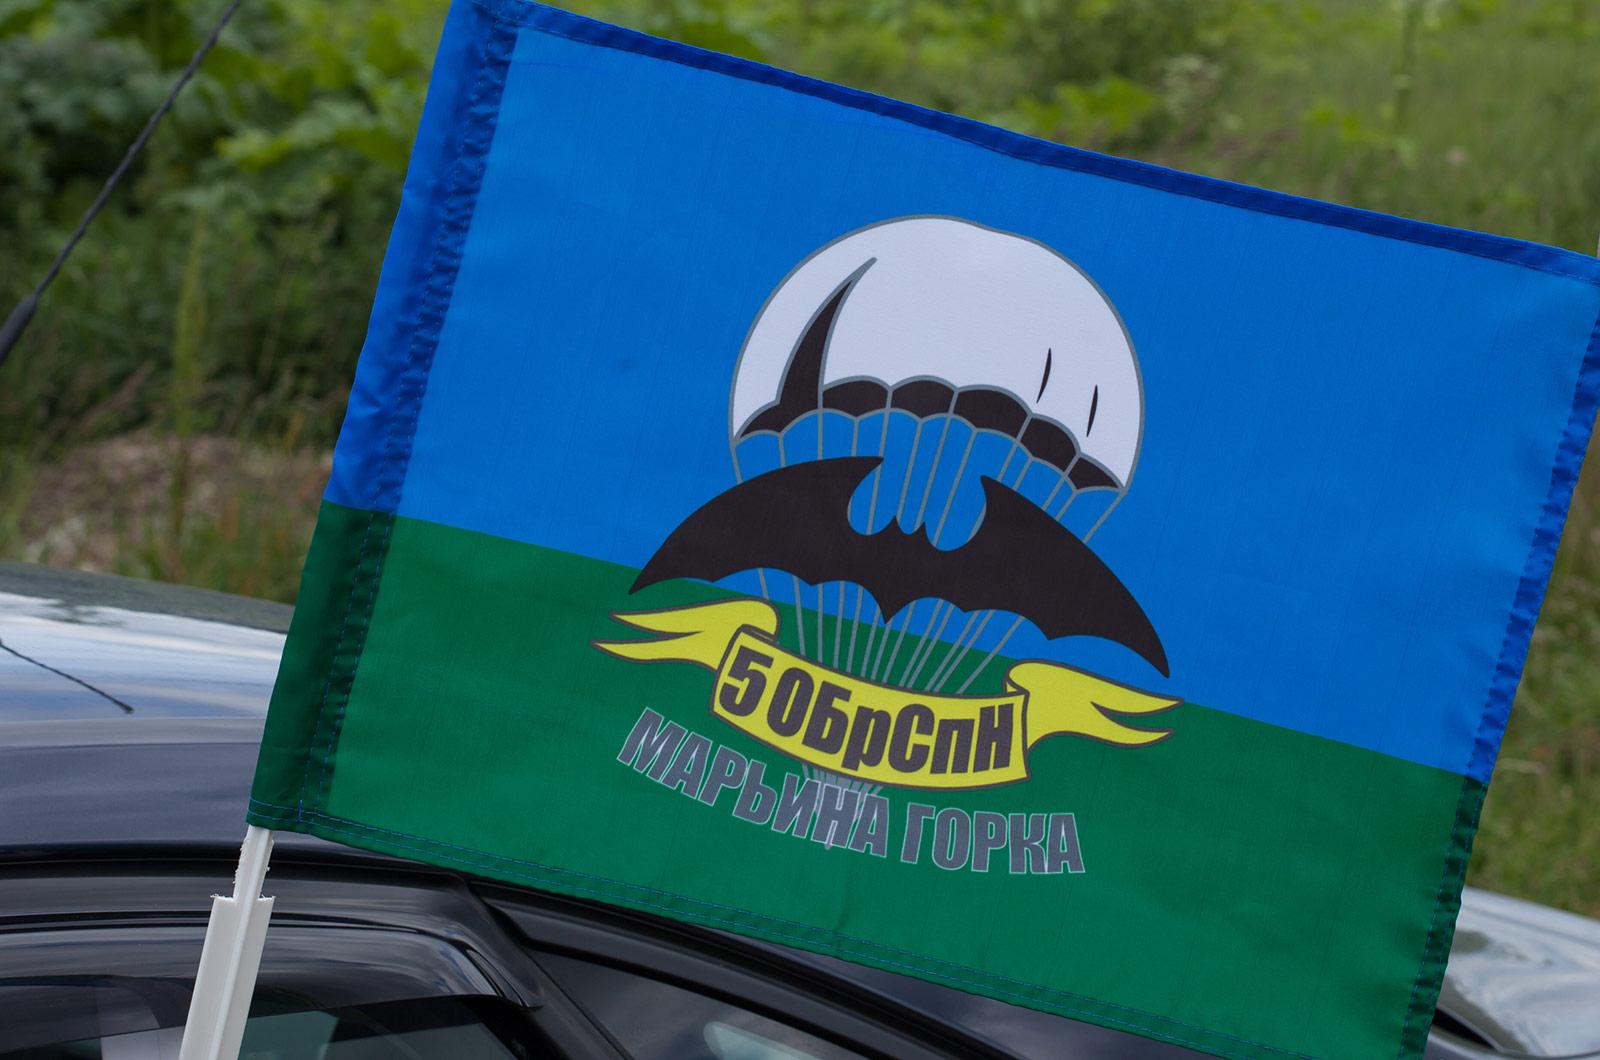 Флаг на машину с кронштейном 5 ОБрСпН Марьина Горка